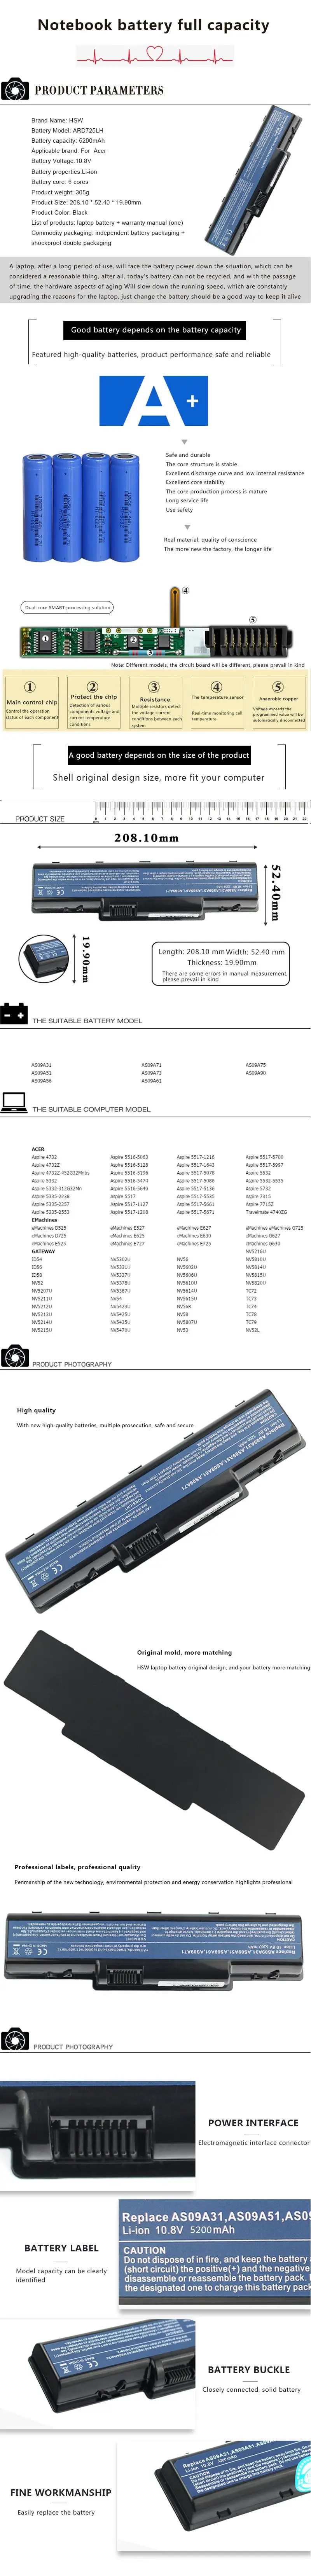 HSW Аккумулятор для ноутбука acer Aspire 4732 Emachine D525 D725 E-625 E525 E527 E625 E627 e627-5750 E725 шлюз NV52 NV53 акумуляторная батарея